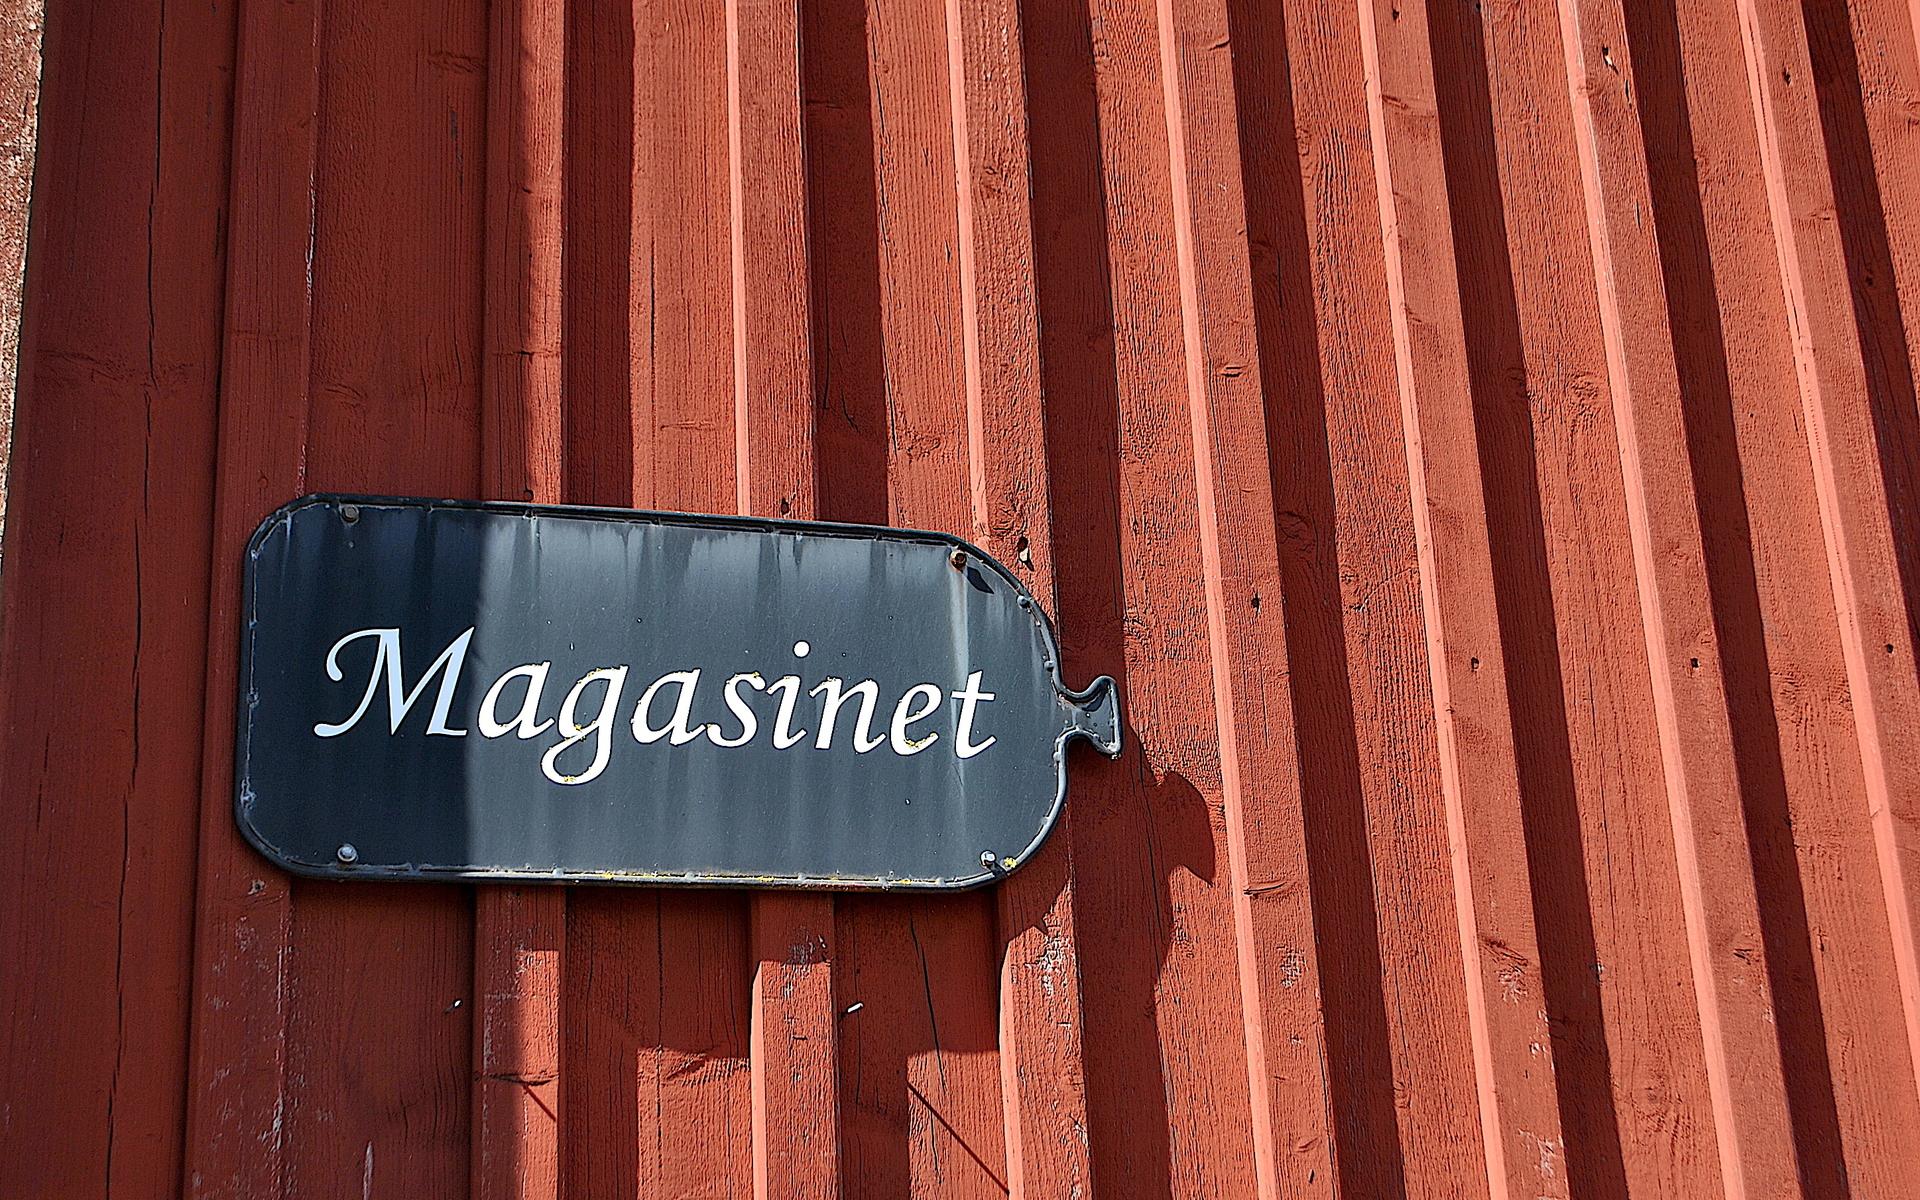 Teater Tofta sätter som tradition bjuder upp sin teater på loftet i Magasinet.